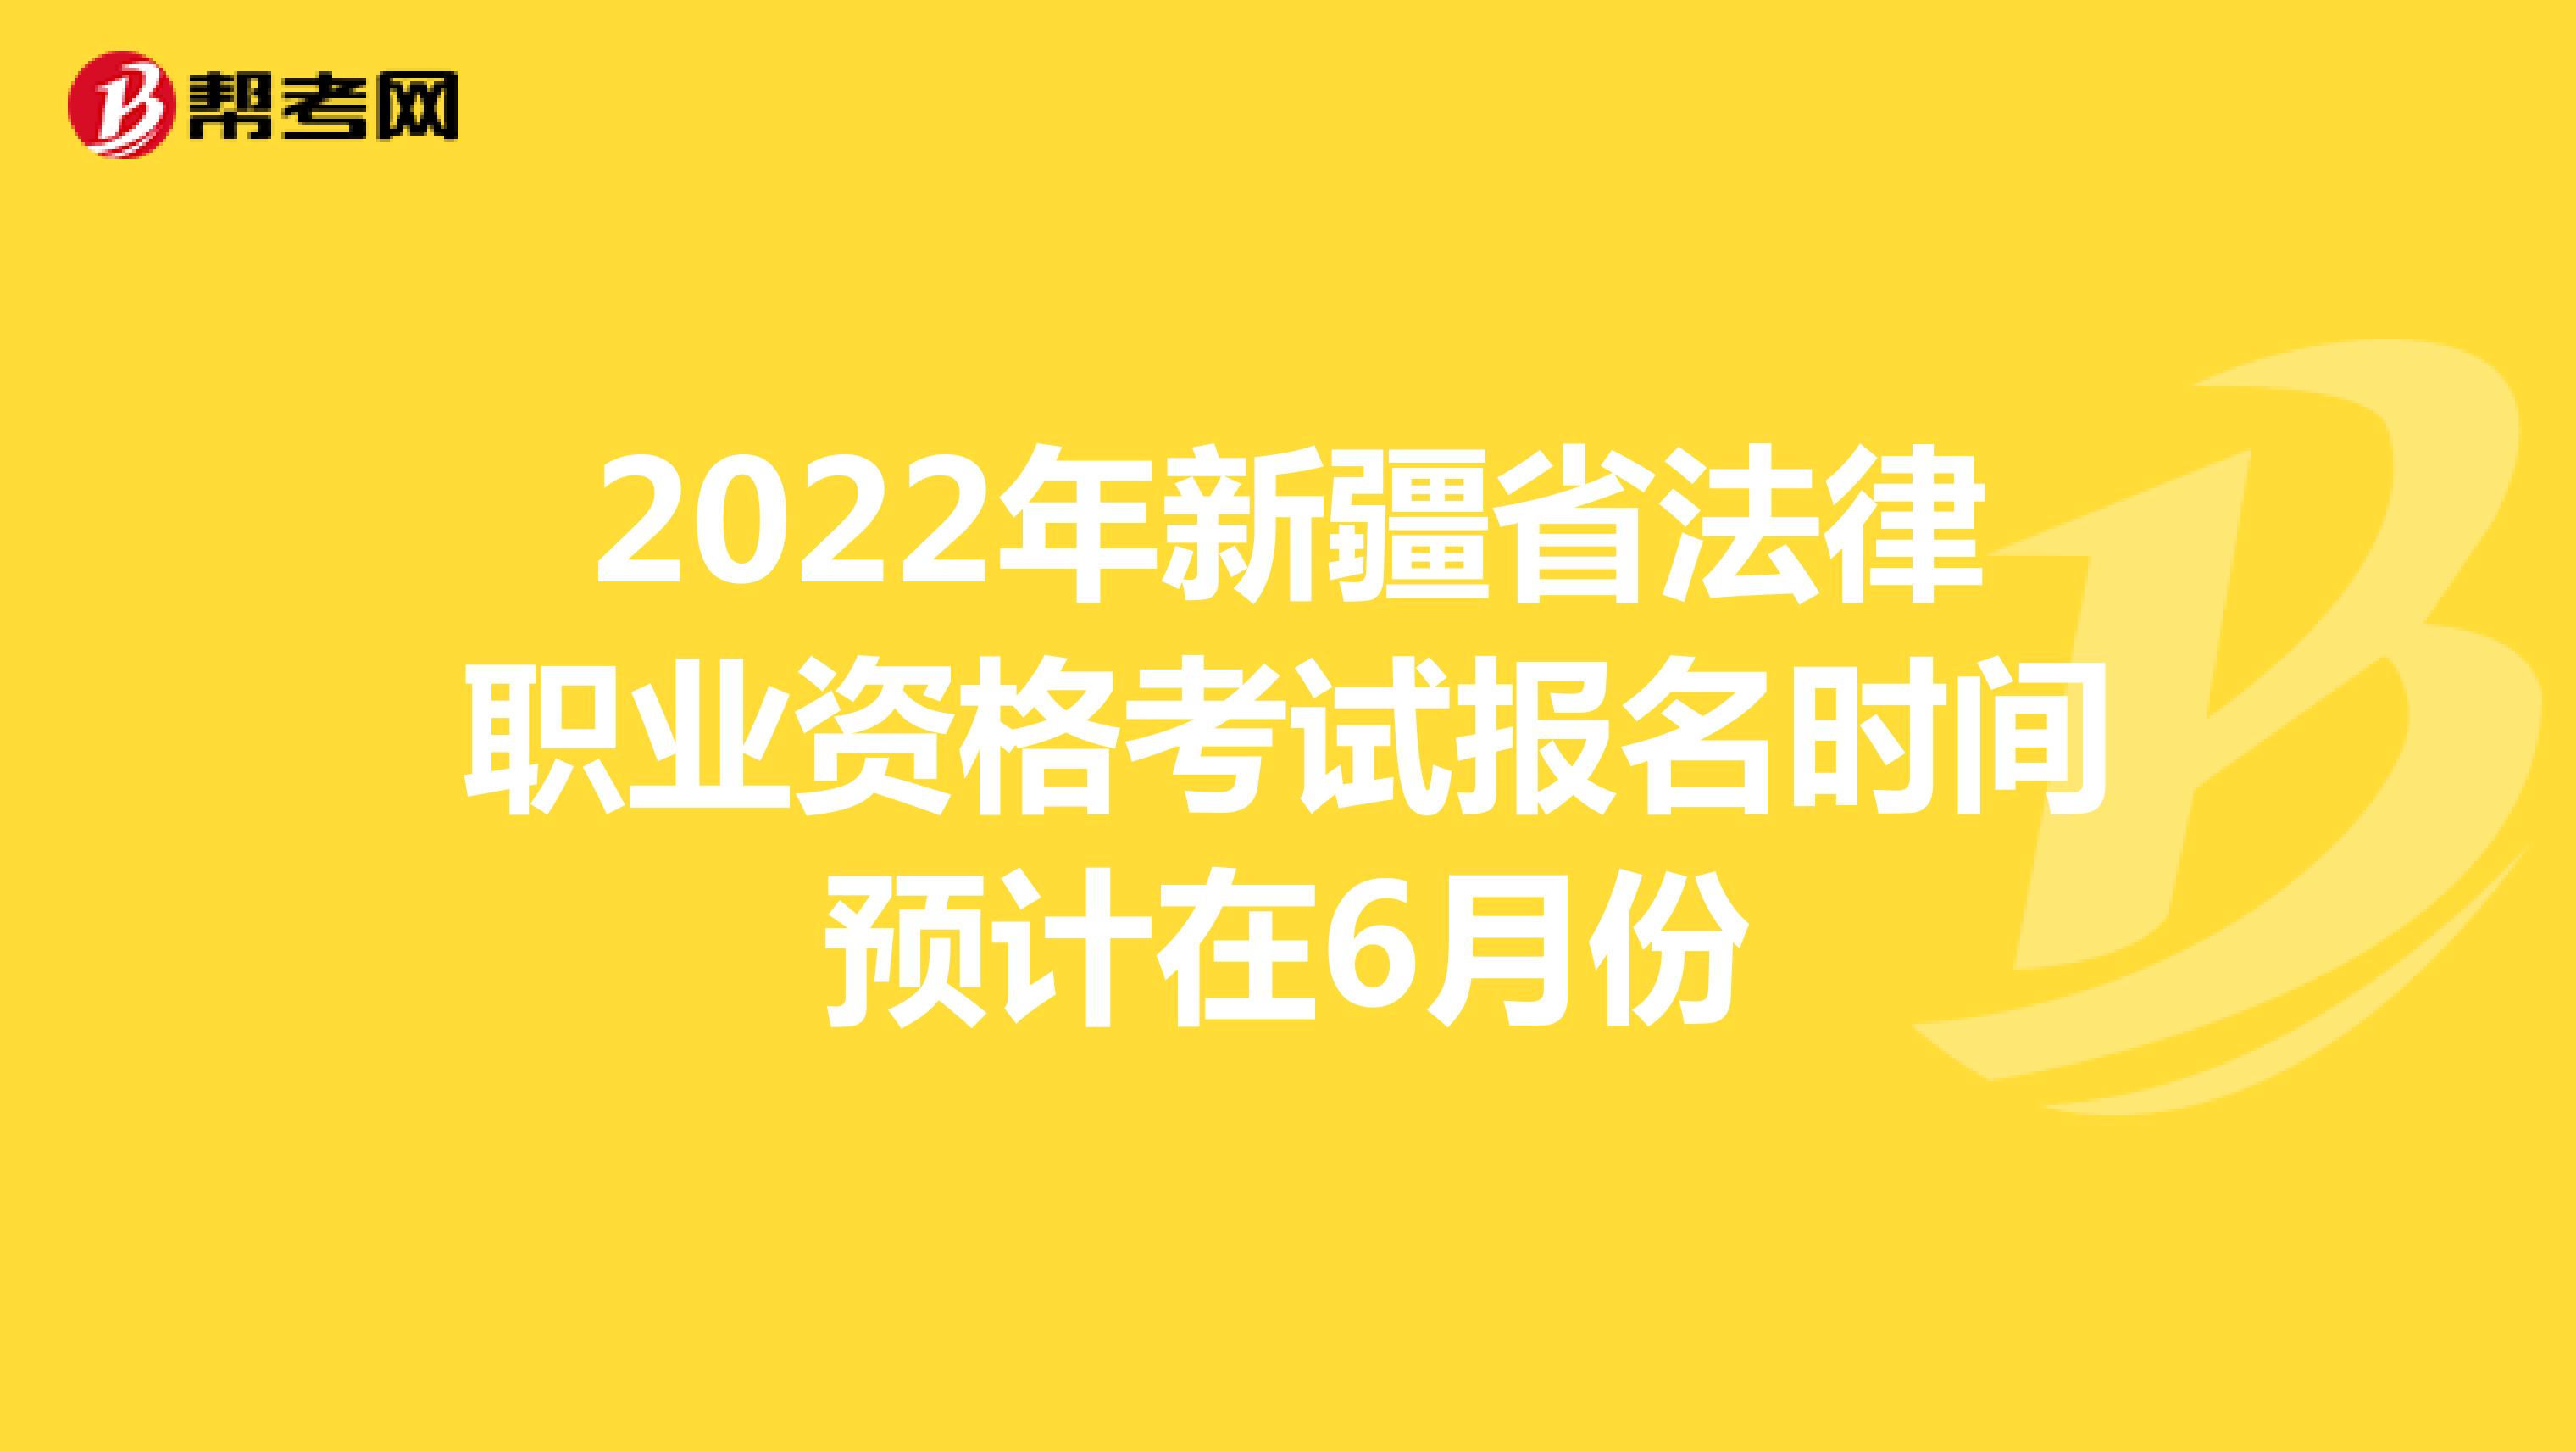 2022年新疆省法律职业资格考试报名时间预计在6月份